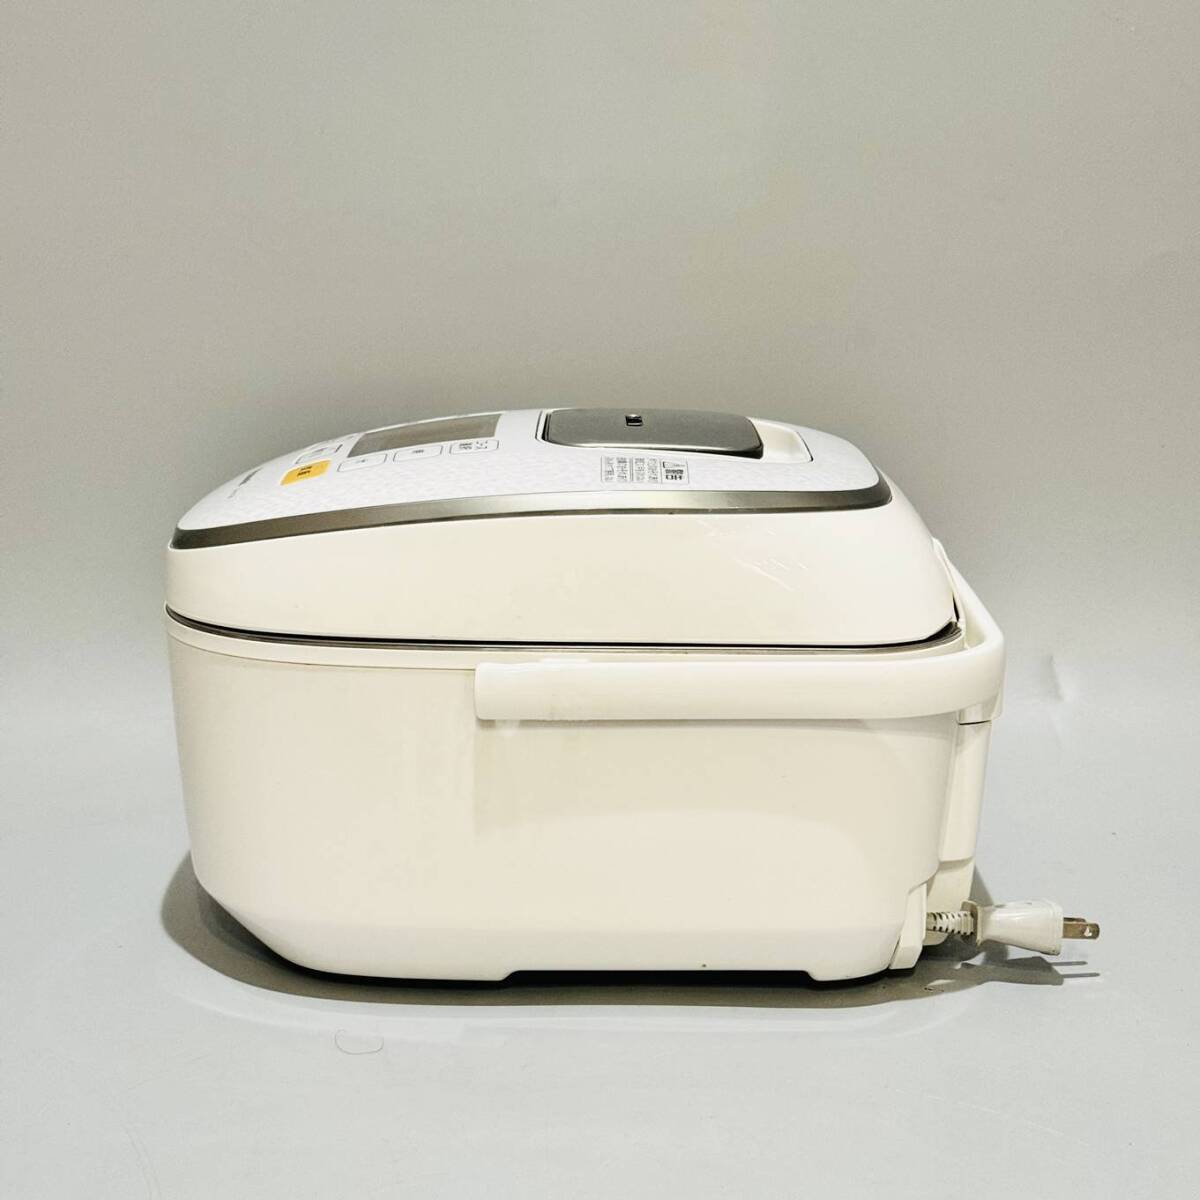 甲MJ17518 クリーニング済 動作確認済 2014年製 5.5合炊き パナソニック IHジャー炊飯器 SR-HX104 炊飯ジャー 調理機器 白の画像10